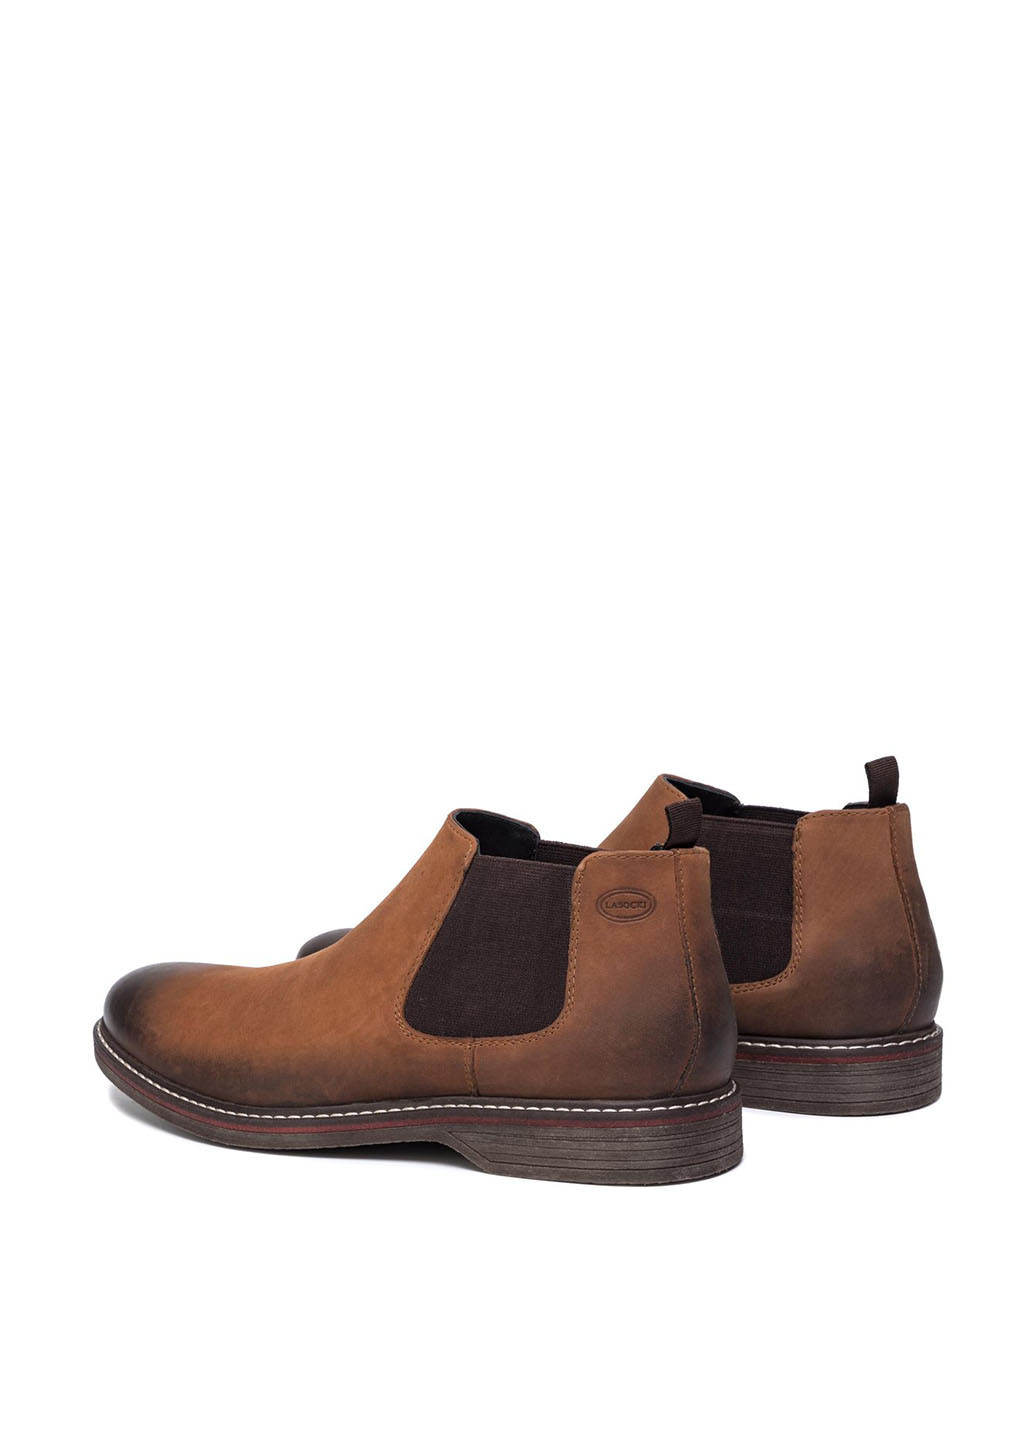 Светло-коричневые осенние черевики lasocki for men mi08-c597-588-13 челси Lasocki for men